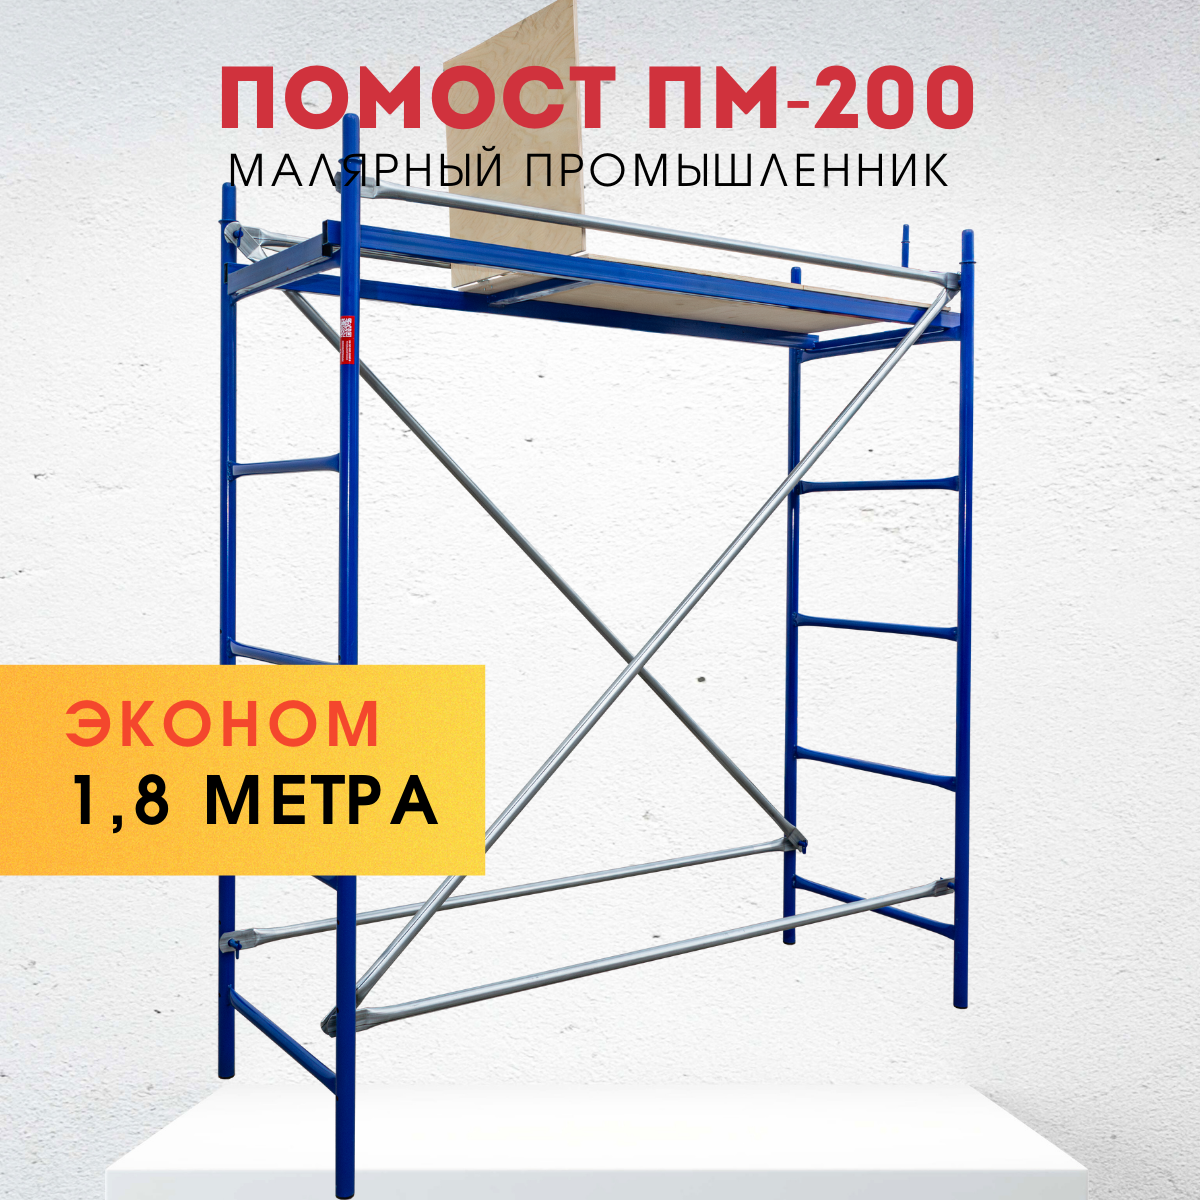 Помост малярный Промышленник ПМ-200 эконом